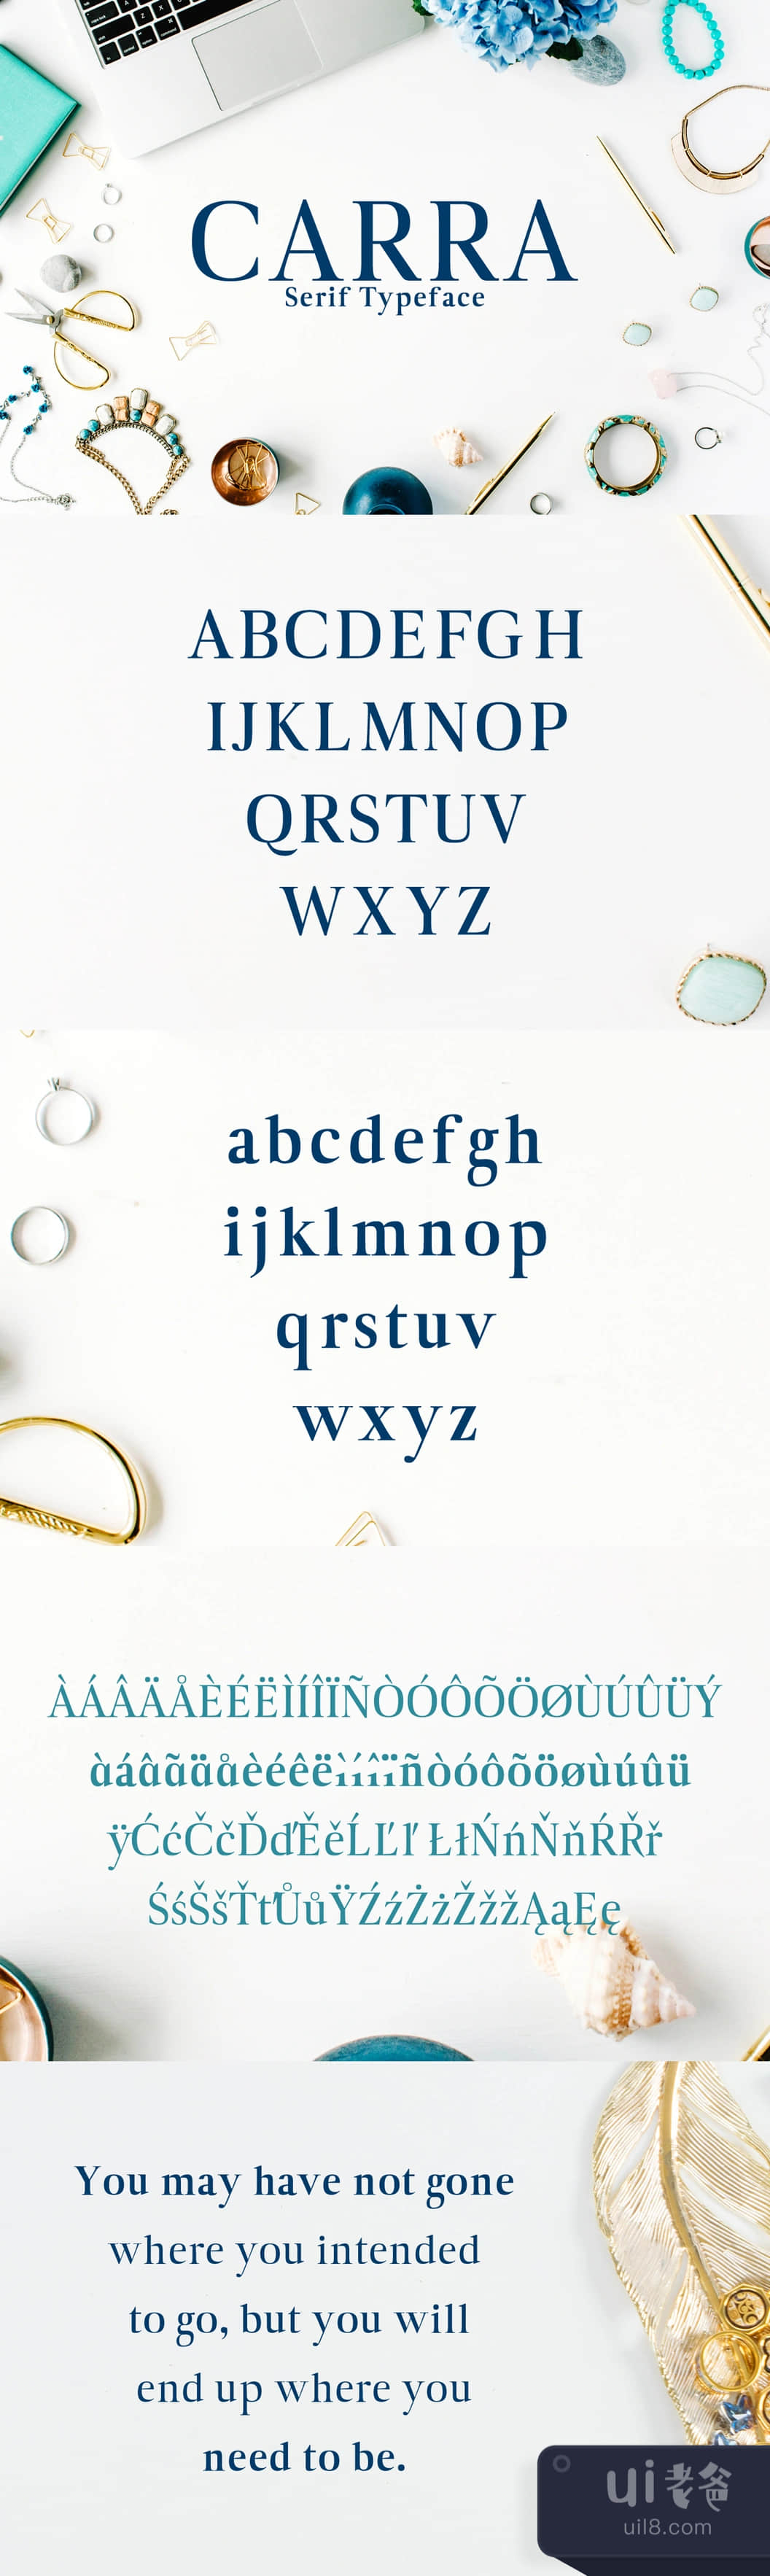 卡拉无衬线字体 (Carra Serif Typeface)插图1